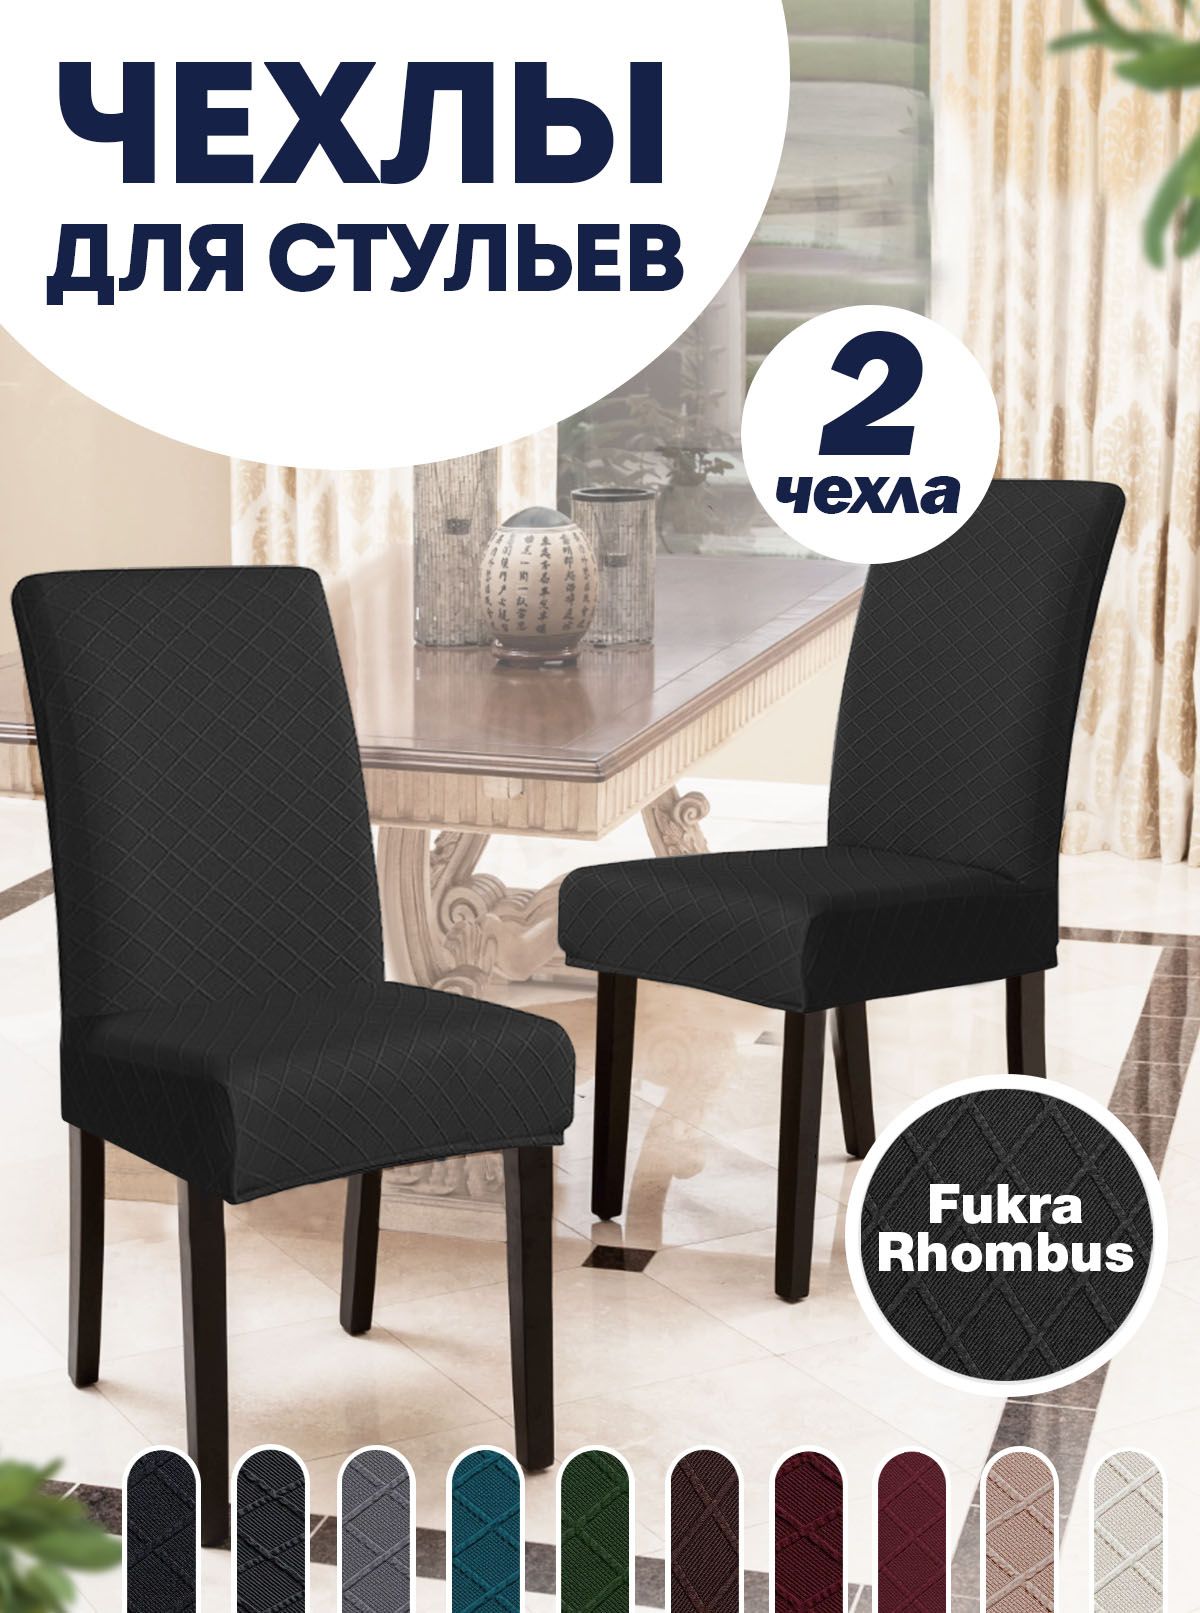 Универсальные чехлы на стулья купить недорого в Москве - каталог с ценами malino-v.ru